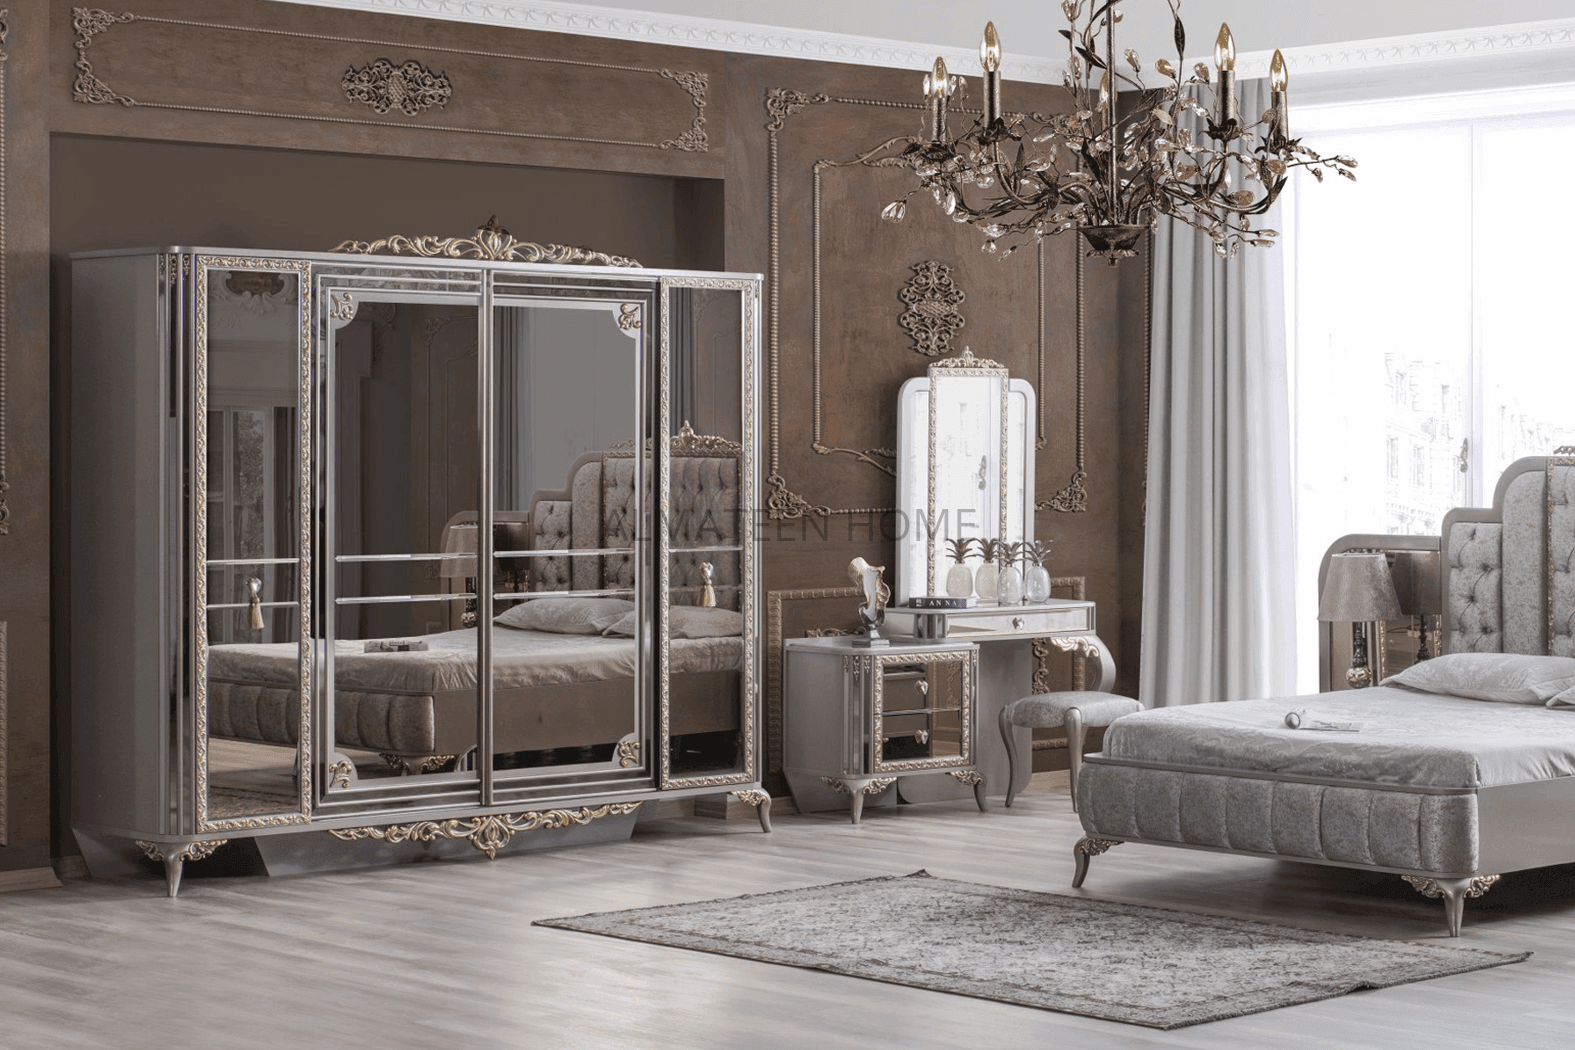 safir-bedroom-set-with-king-size-bed-dresser-sliding-wardrobe-and-side-tables-turkish-4- AL-Mateen Home